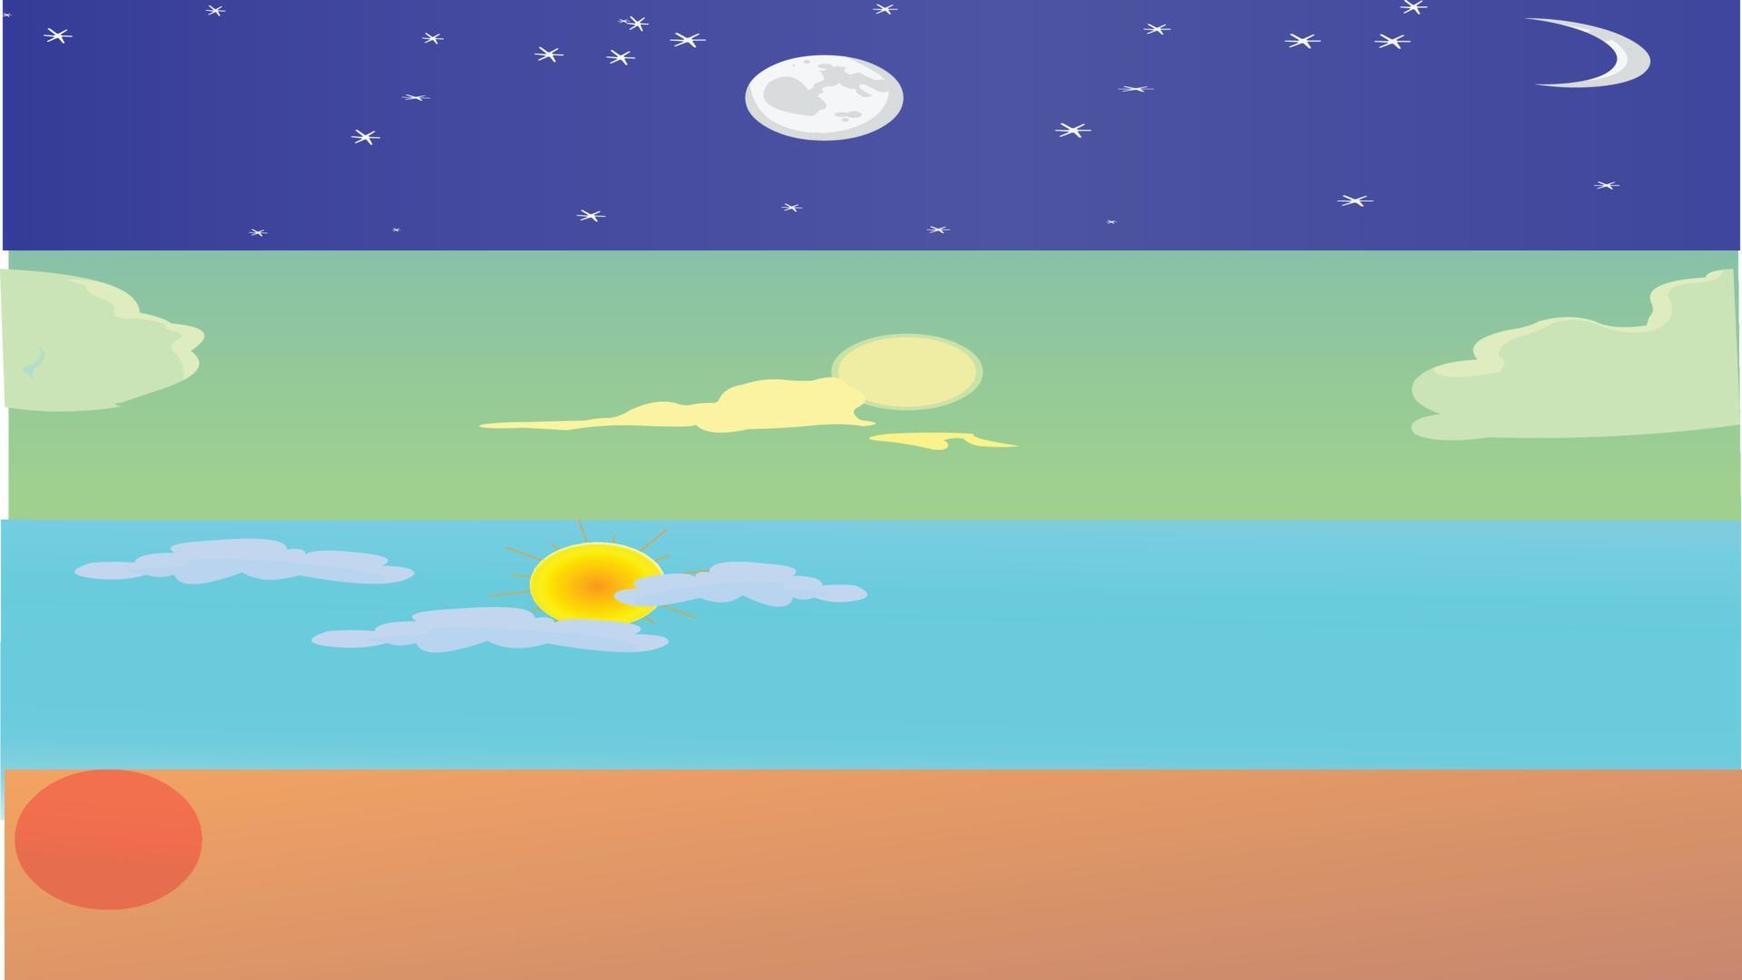 cielo diferentes poses con luna, estrellas del sol, ilustraciones de nubes vector